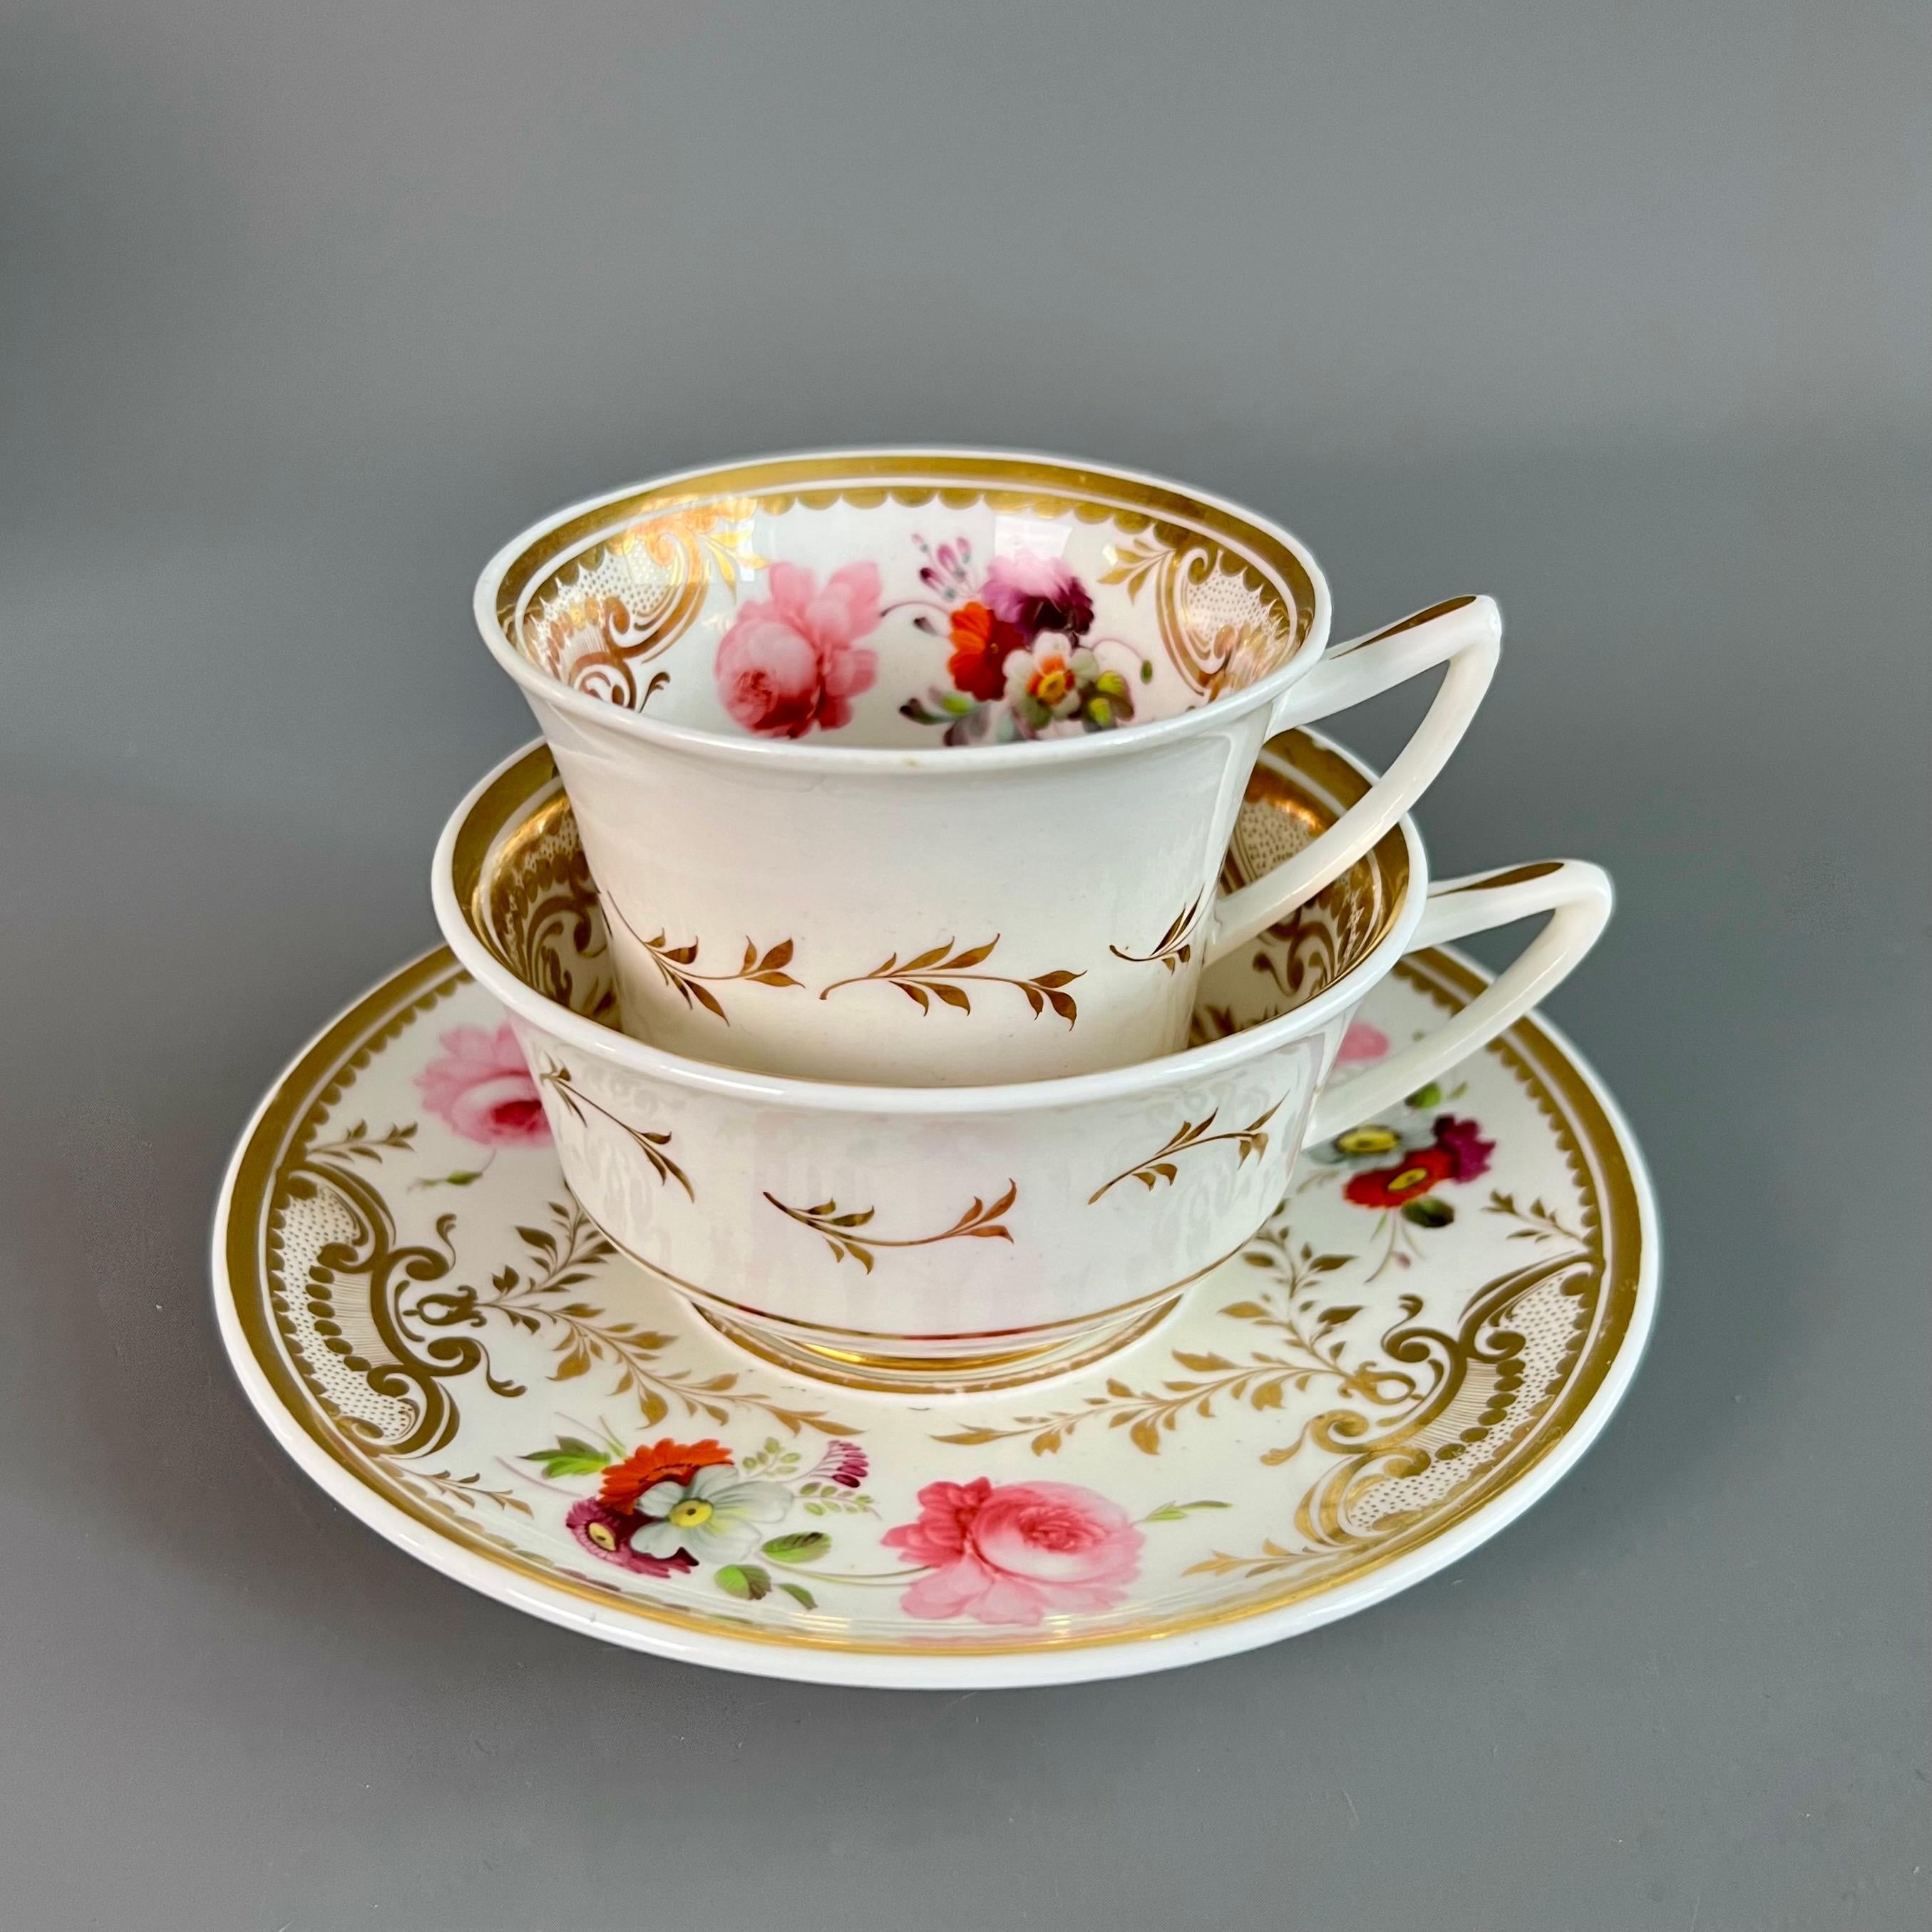 Il s'agit d'un rare et magnifique trio de tasses à thé fabriqué par H&R Daniel vers 1825. L'ensemble est empoté dans la forme 